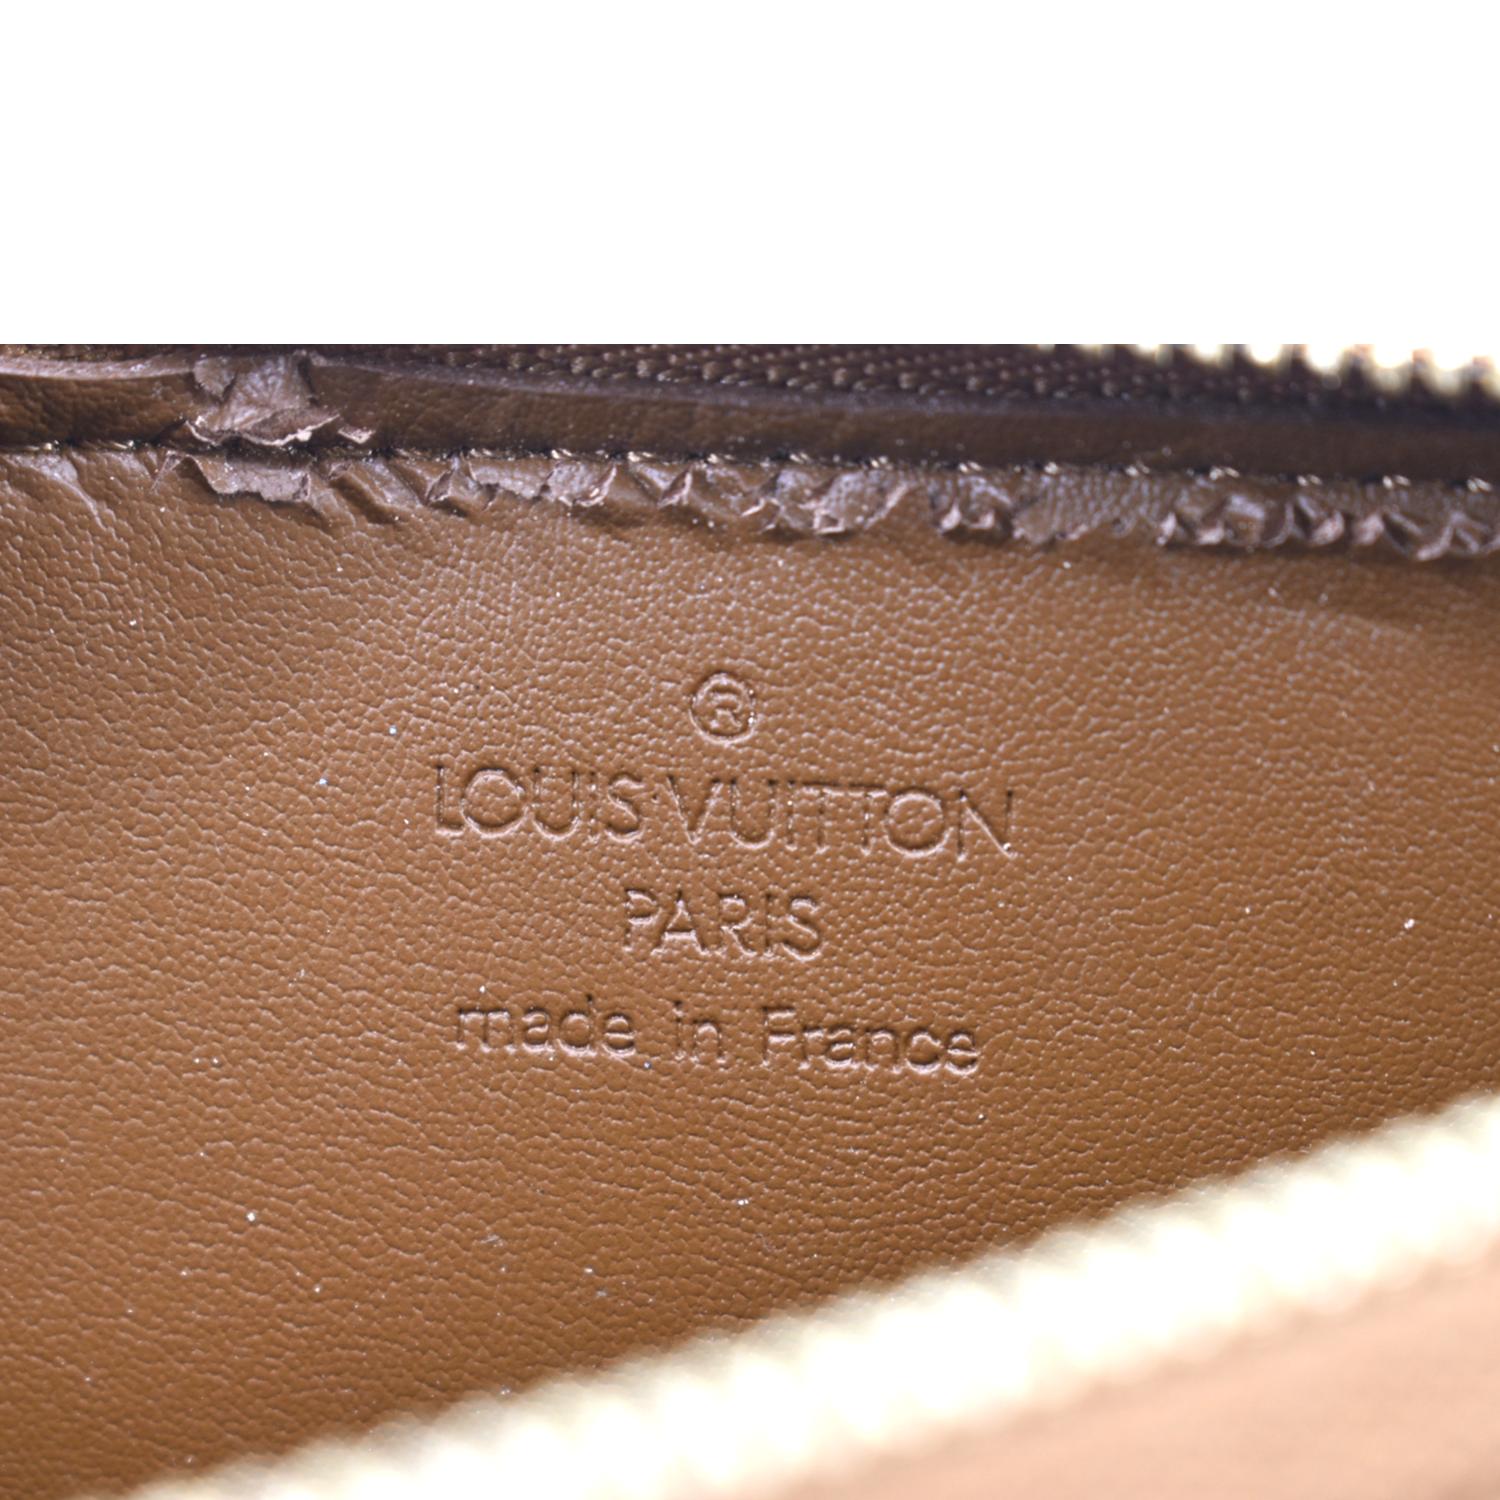 Bolso Lexington Pouch Fashion Leather - Carteras y pequeña marroquinería  M82232